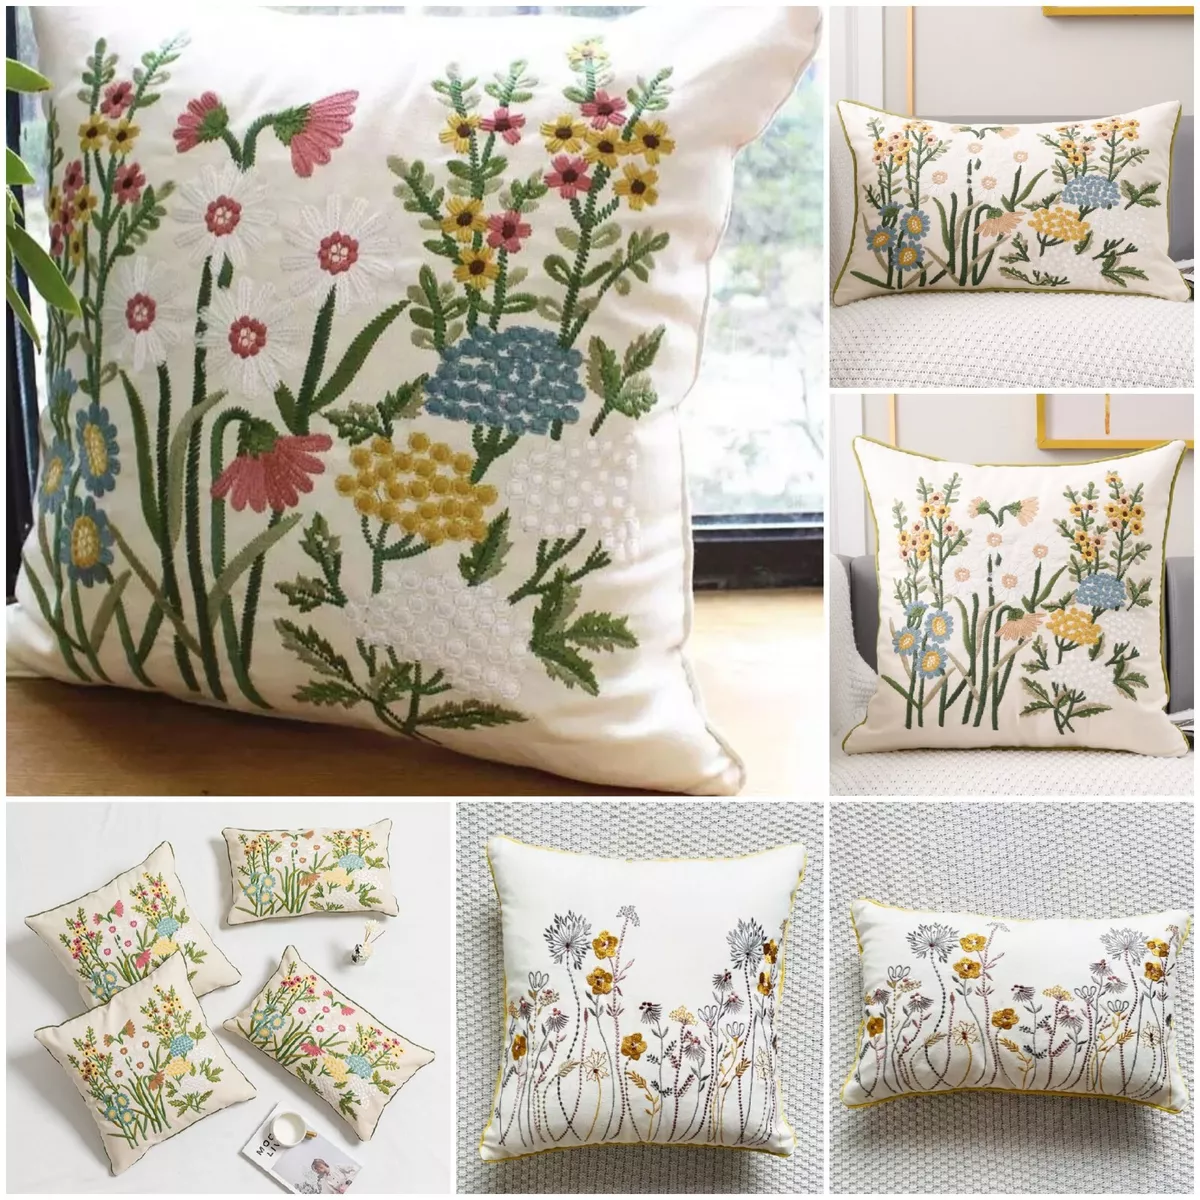 chanel pillows decorative throw pillows